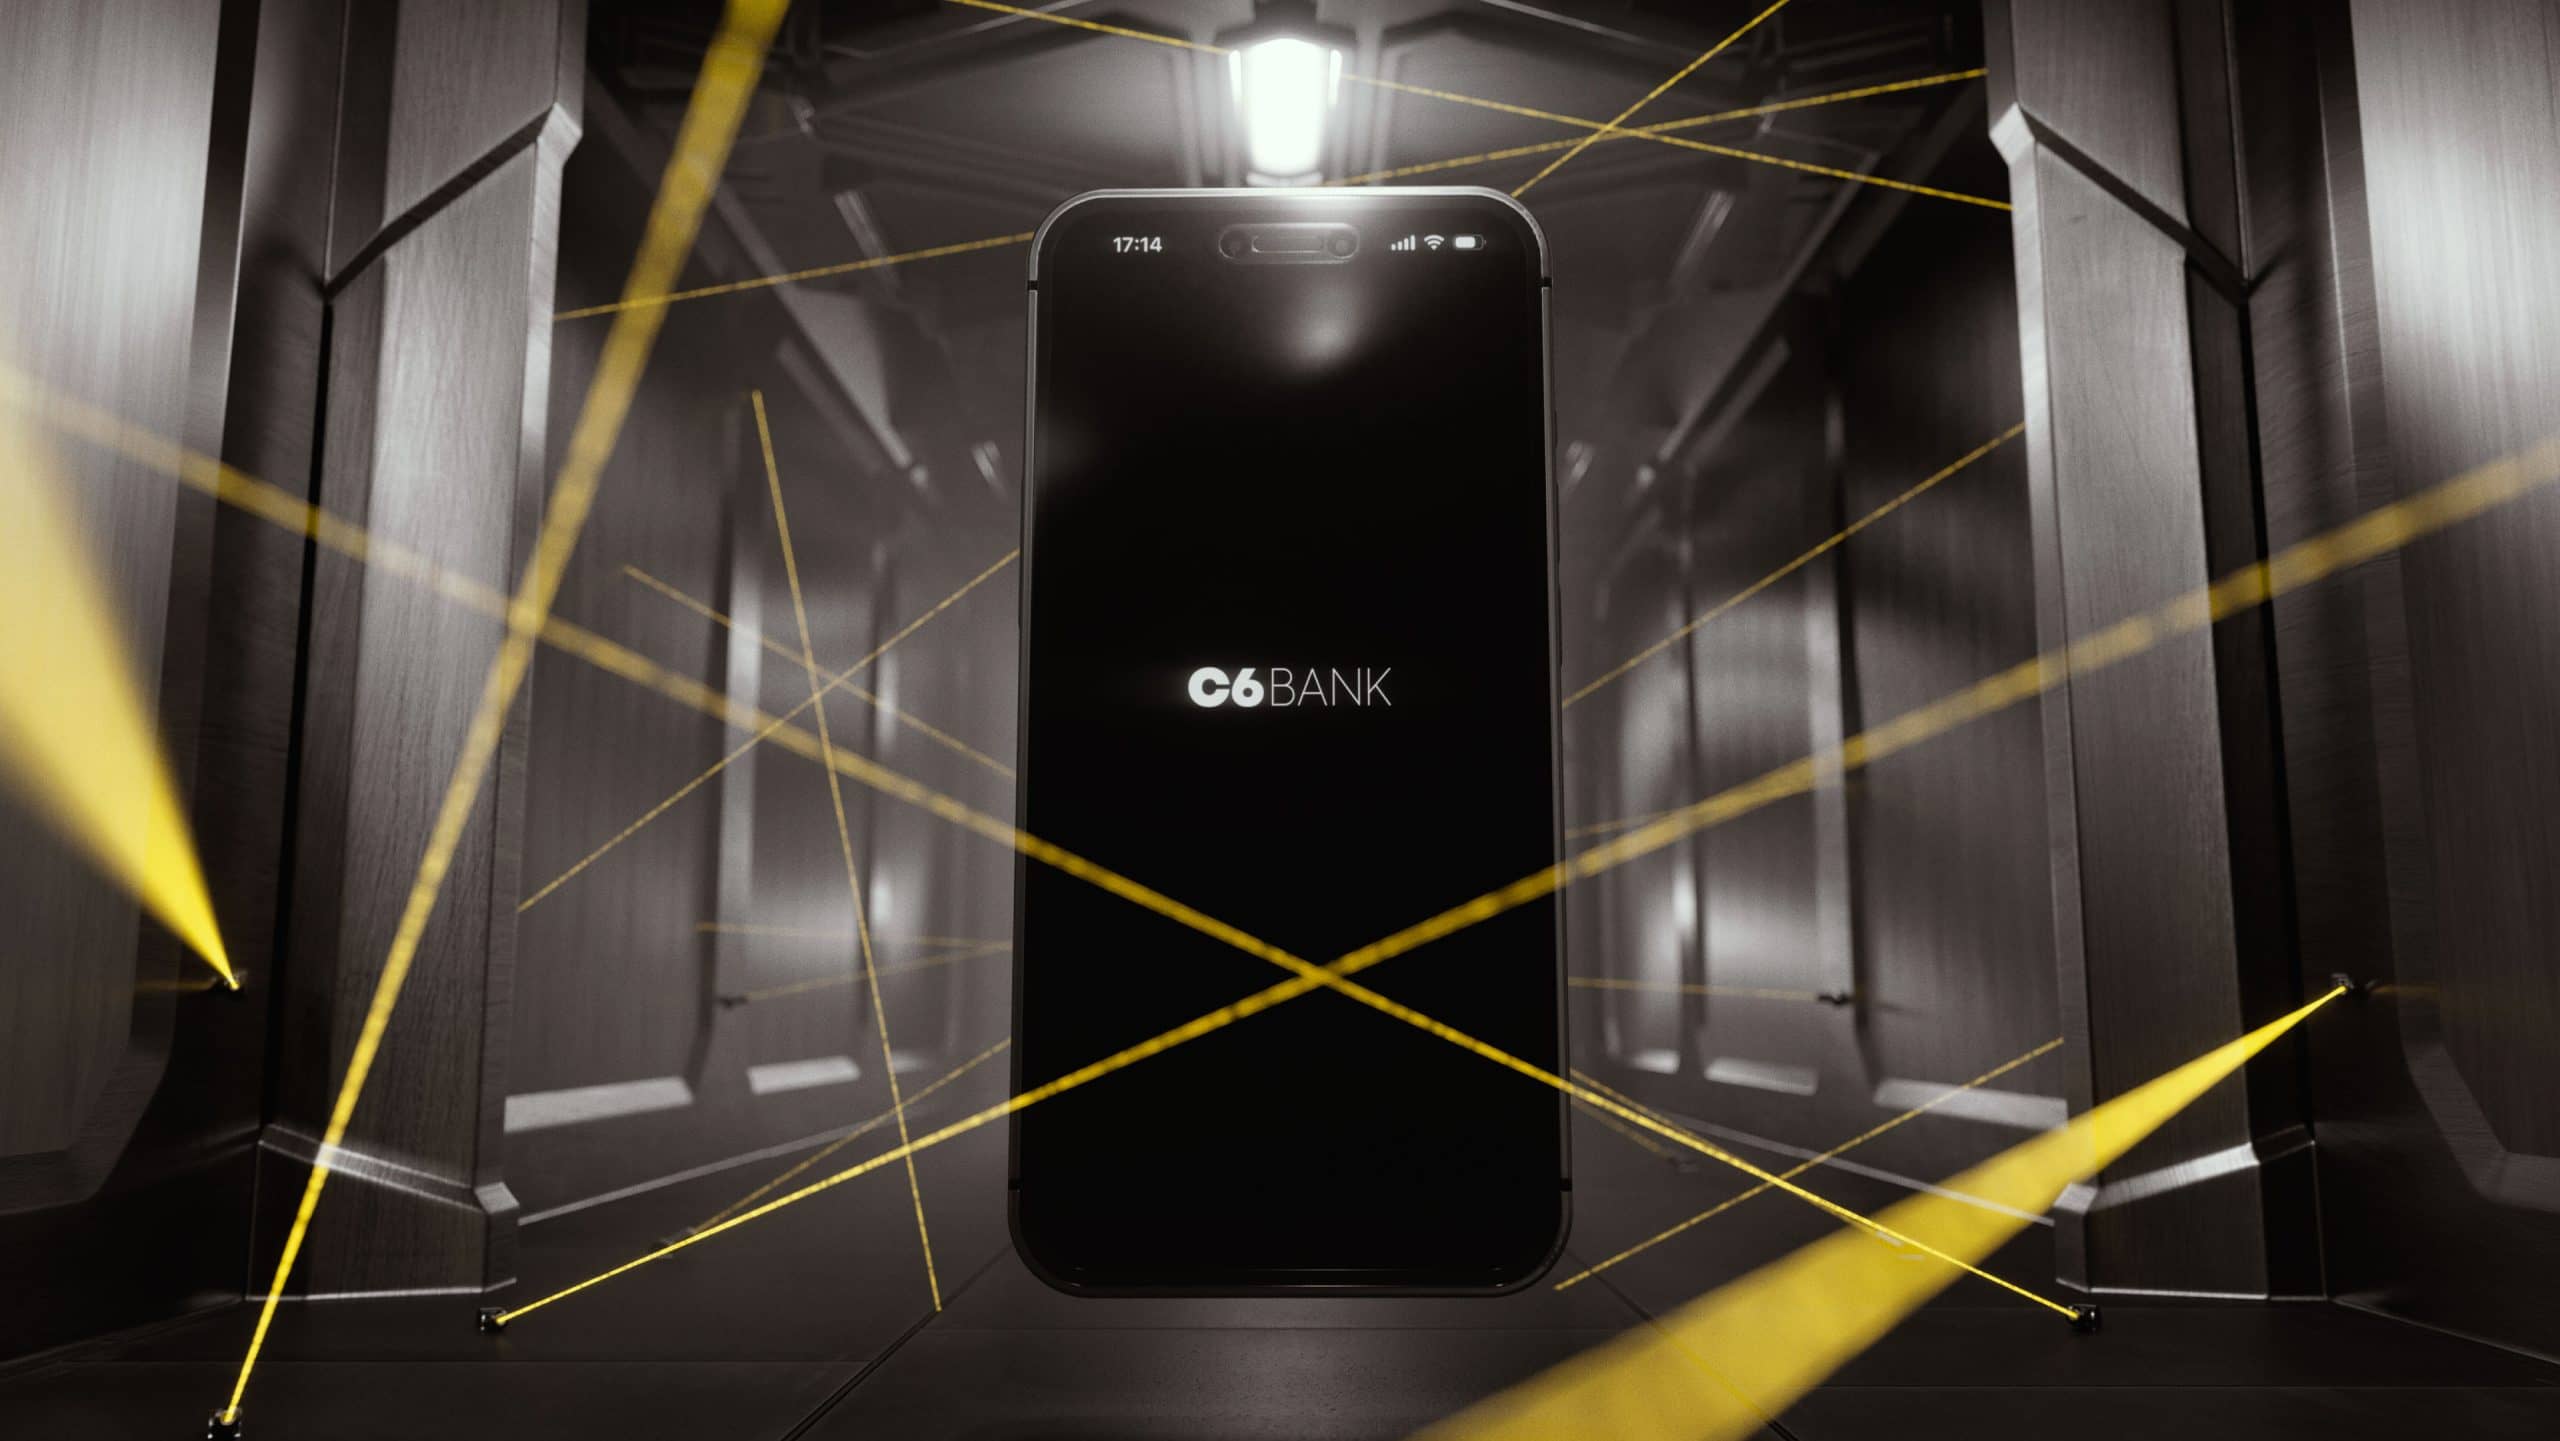 Uma imagem mostra um celular em um corredor protegido por lasers amarelos. Na tela do celular, está o logo do C6 Bank em um fundo preto. As paredes do corredor são cinzas.